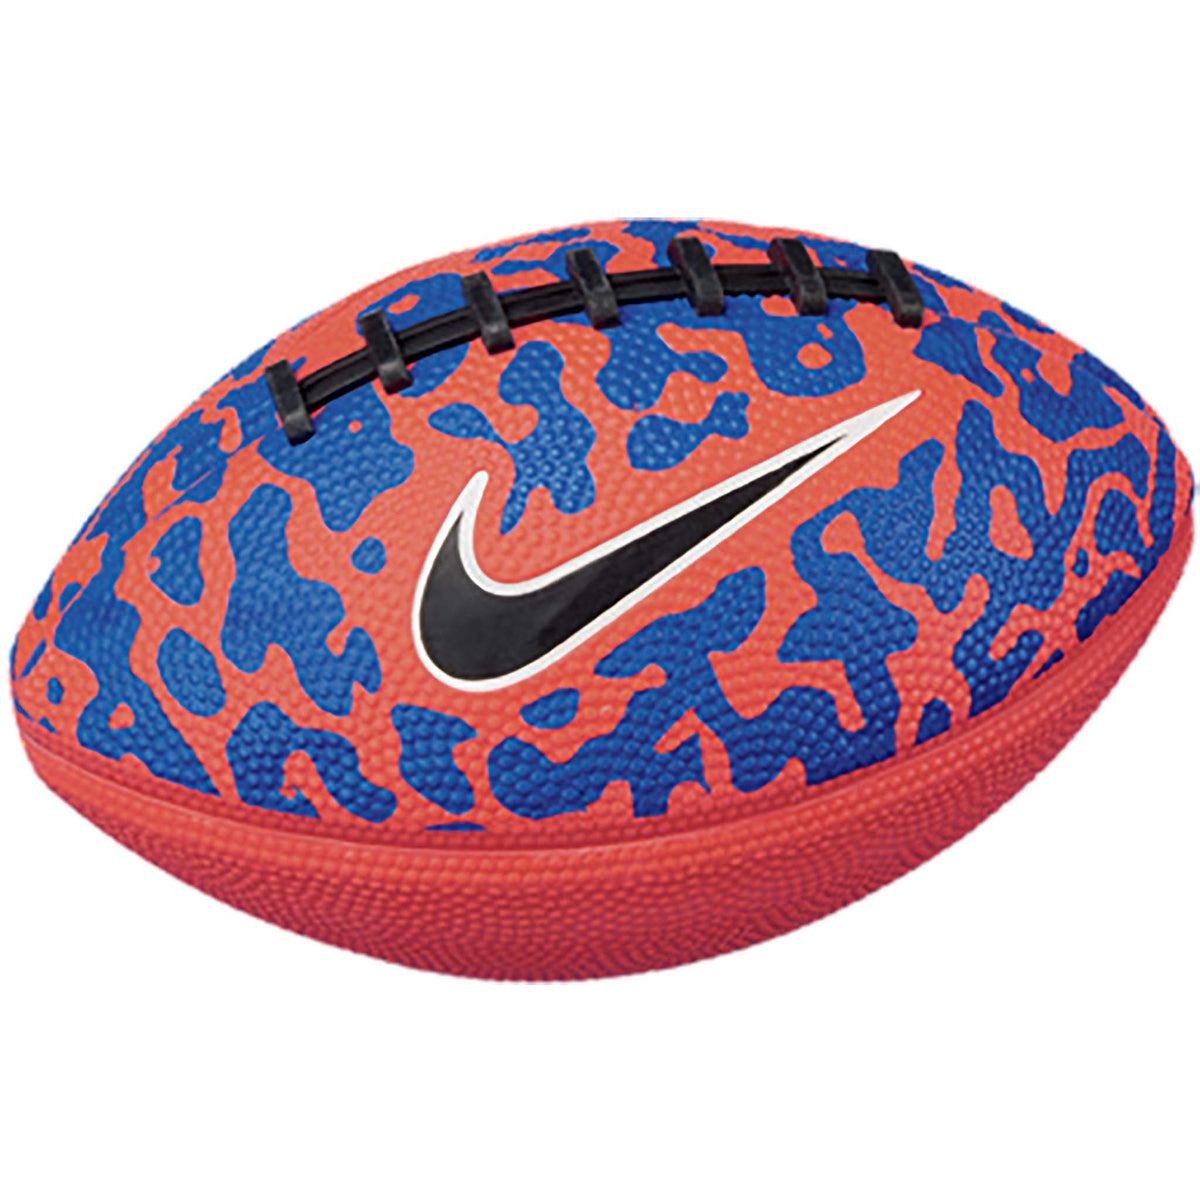 Nike Mini Spin 4.0 ballons de football crimson